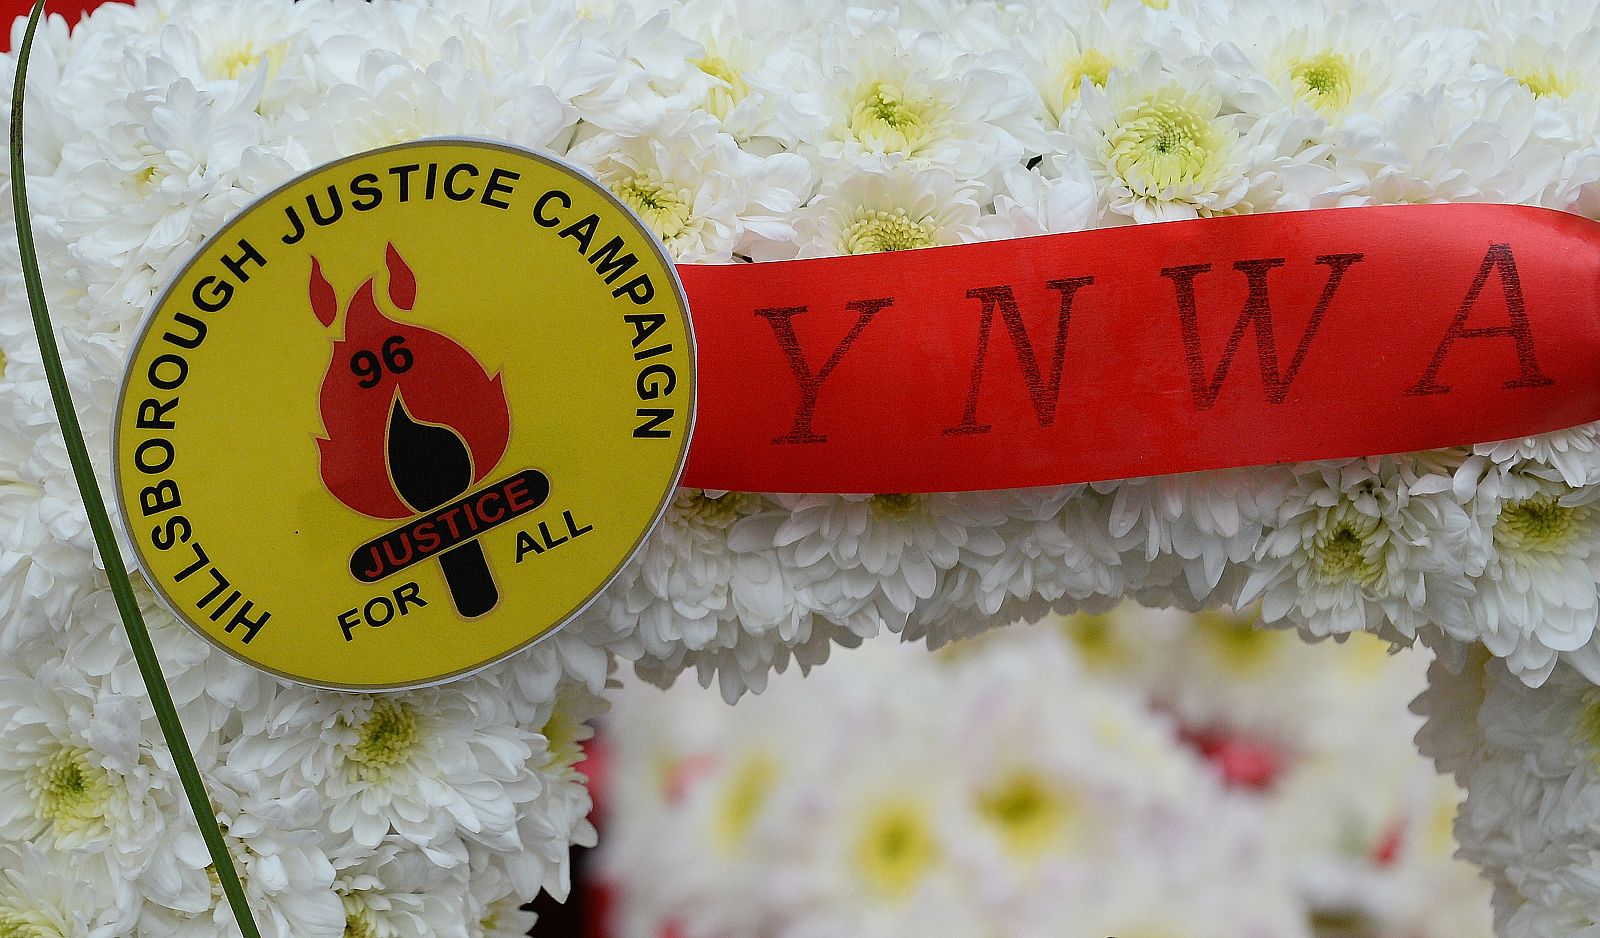 Una ofrenda floral en homenaje a las víctimas de Hillsborough pide "justicia para todos"